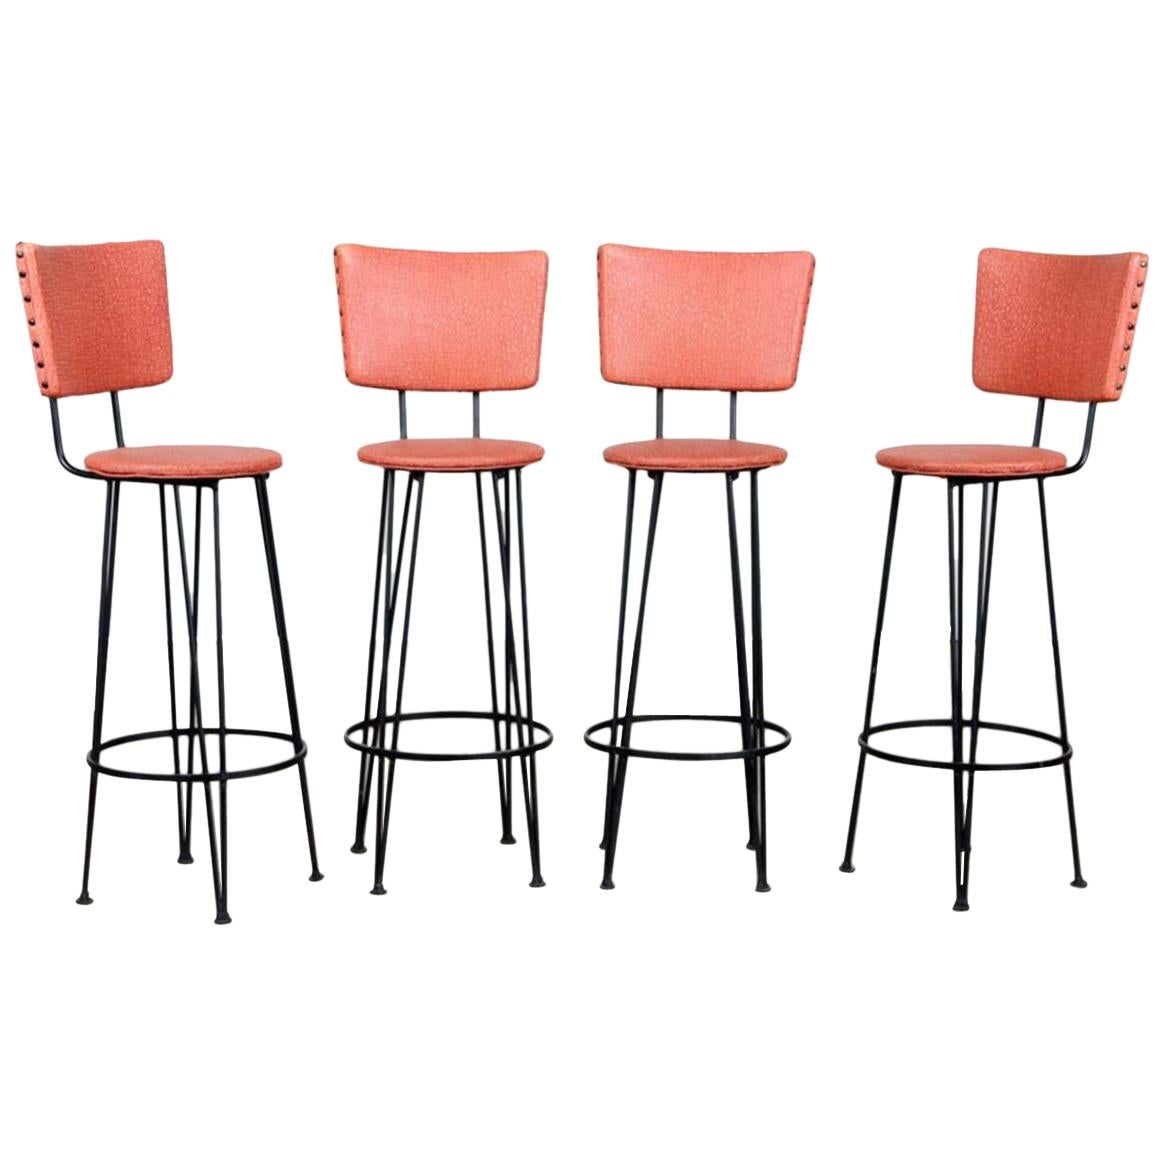 Set of Four Upholstered Iron Barstools